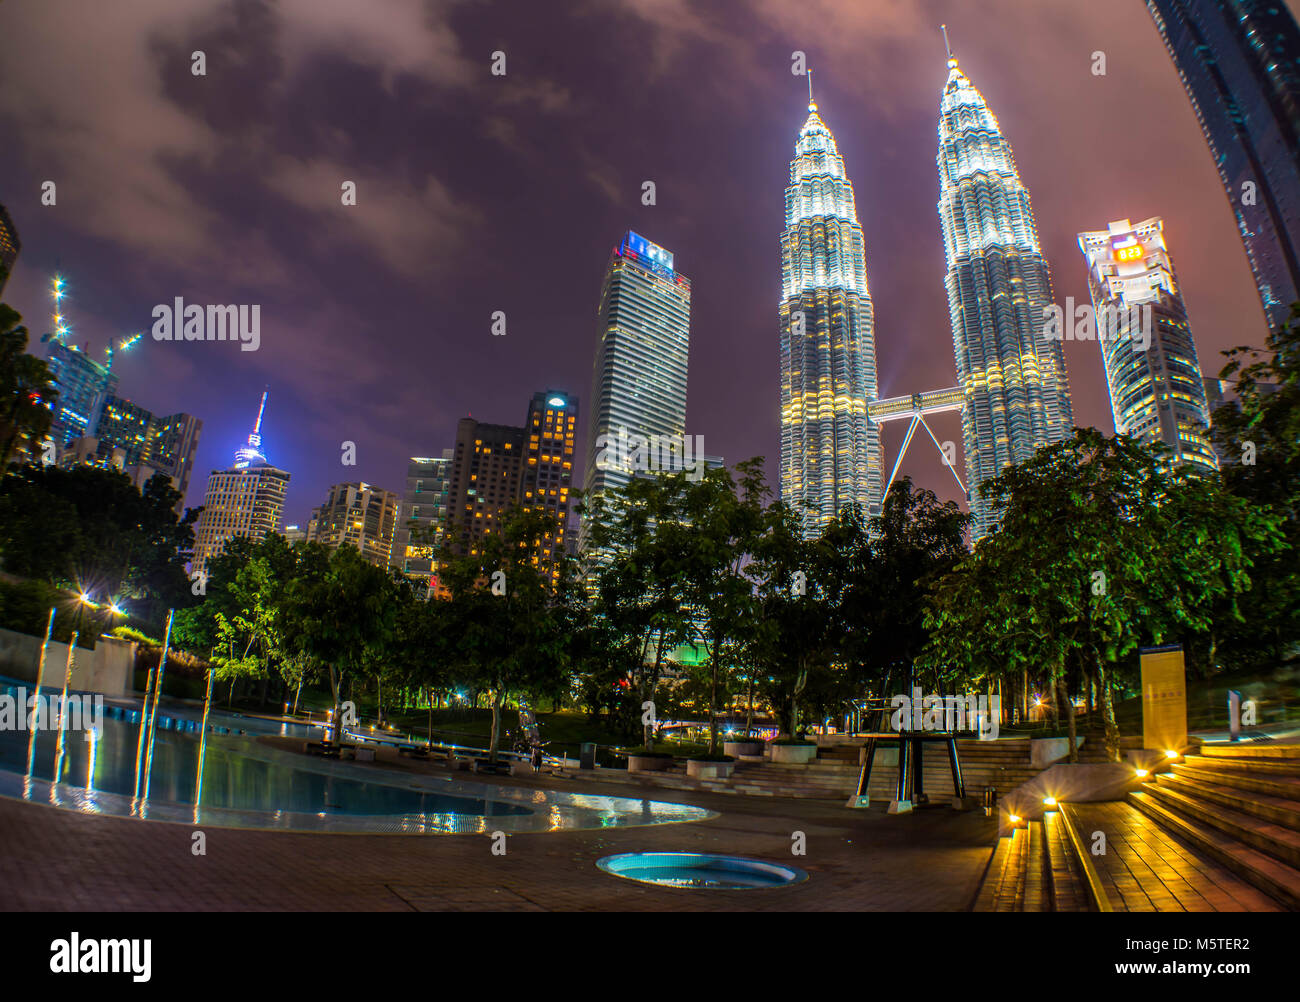 Kuala Lumpur - Petronas Towers KLCC Park - Malaysia Stock Photo